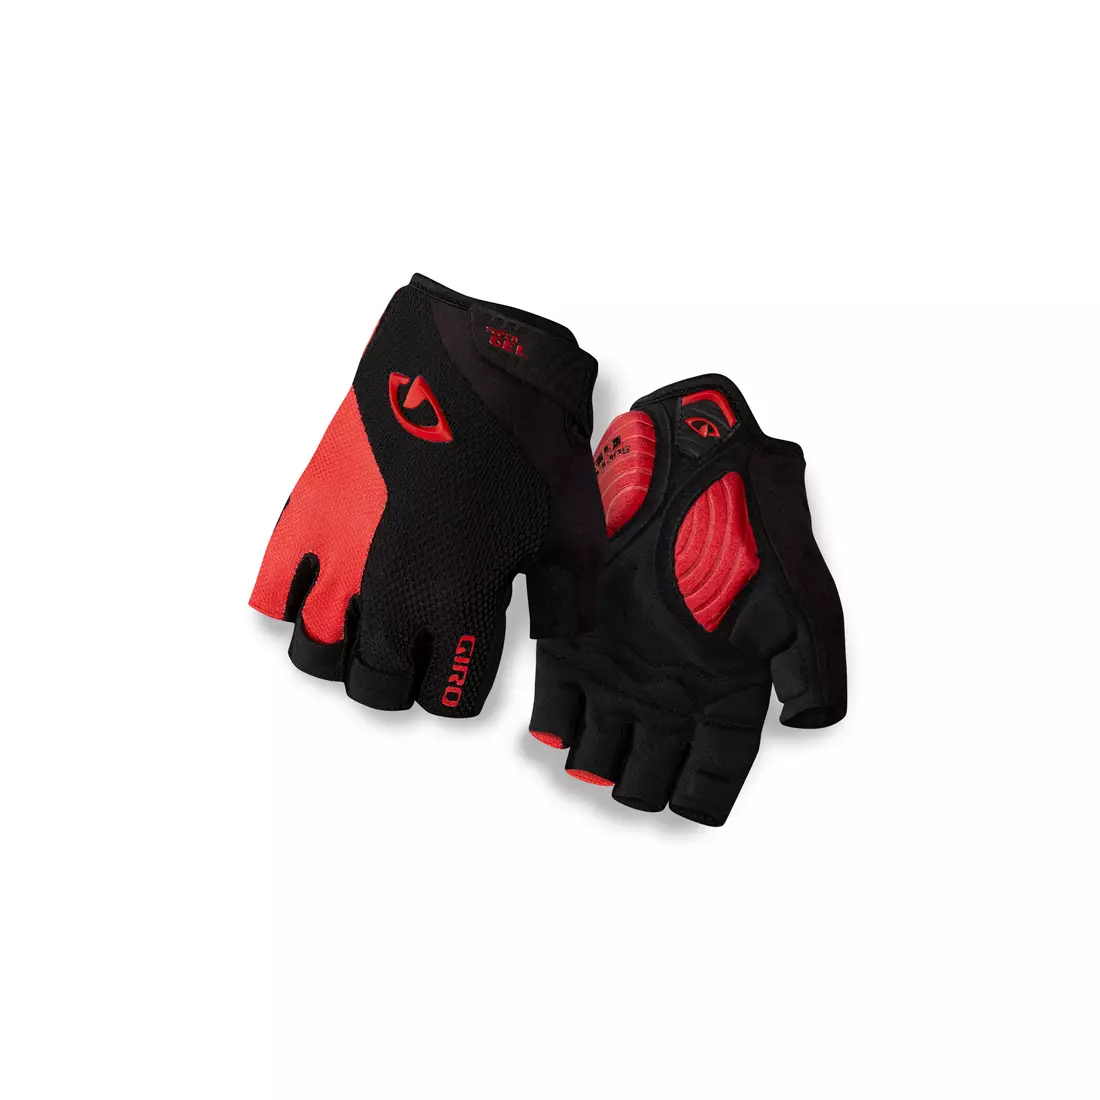 GIRO STRADE DURE mănuși de ciclism, negre și roșii